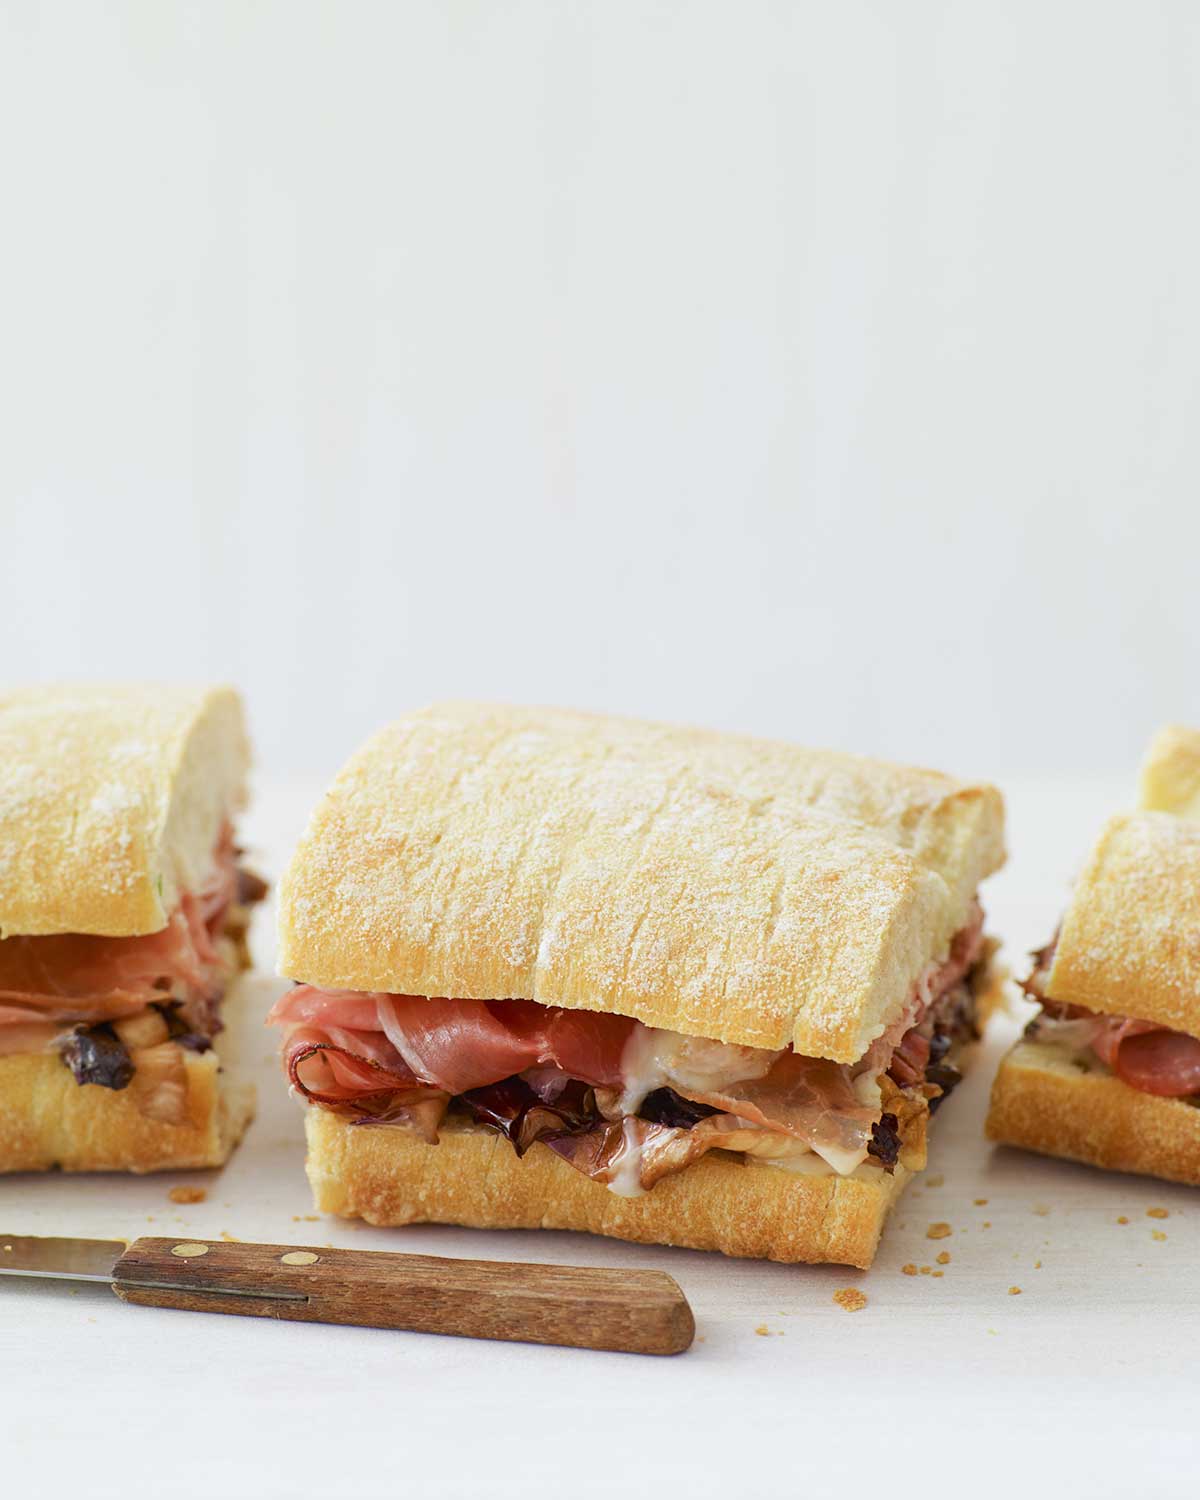 En varm panini med taleggio, grillad radicchio och fläckmacka skuren i tredjedelar med en kniv framför smörgåsen.